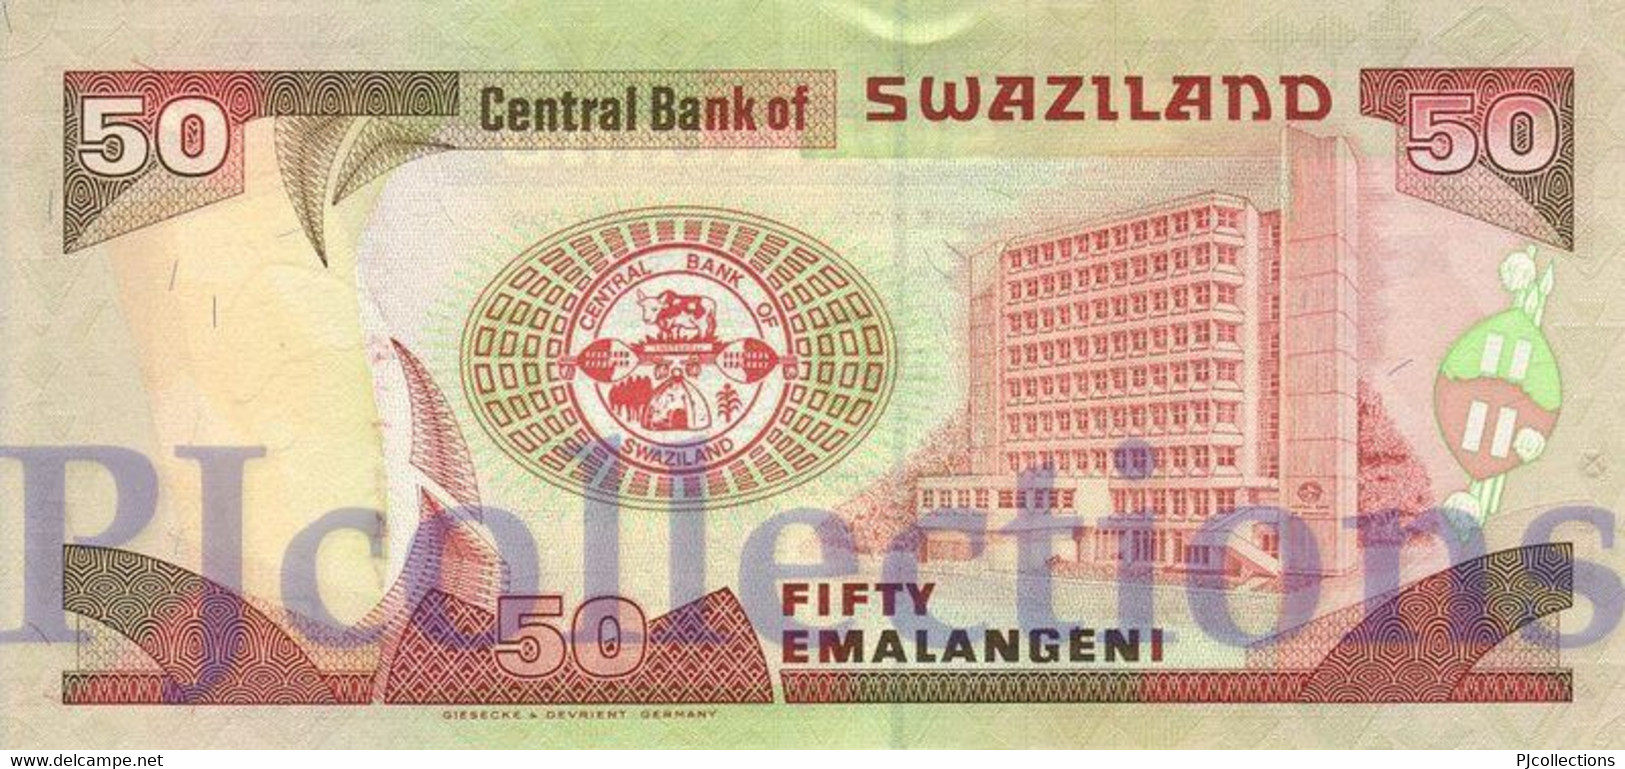 SWAZILAND 50 EMALANGENI 1998 PICK 26b UNC - Swaziland